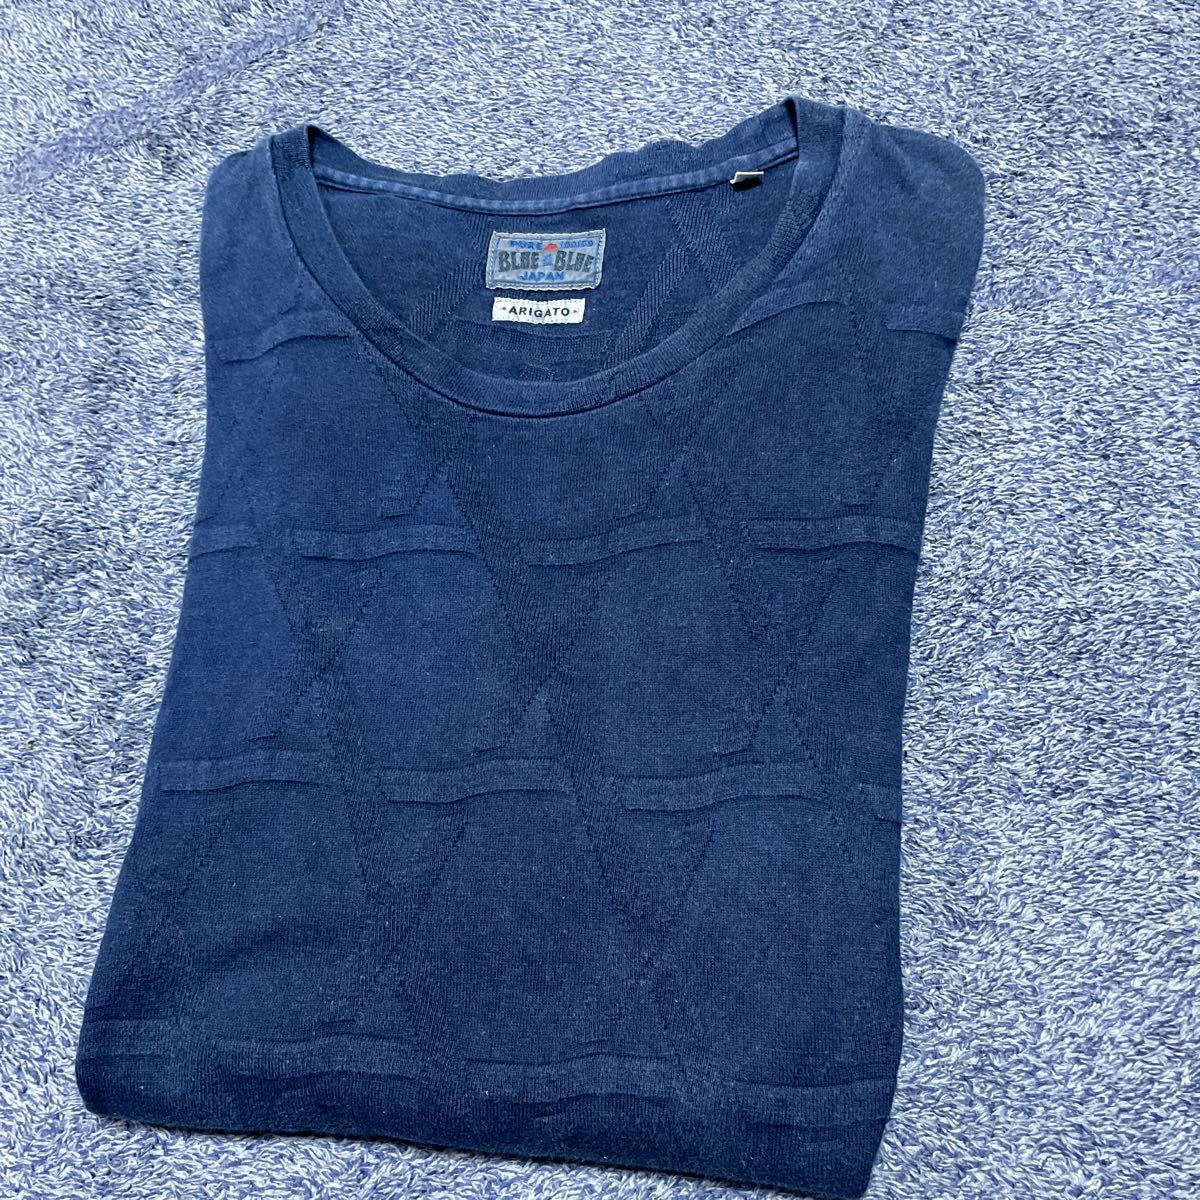 BLUE BLUE JAPAN PURE INDIGO ブルーブルージャパン インディゴ染め 半袖Tシャツ メンズサイズ3 ARIGATOの画像7